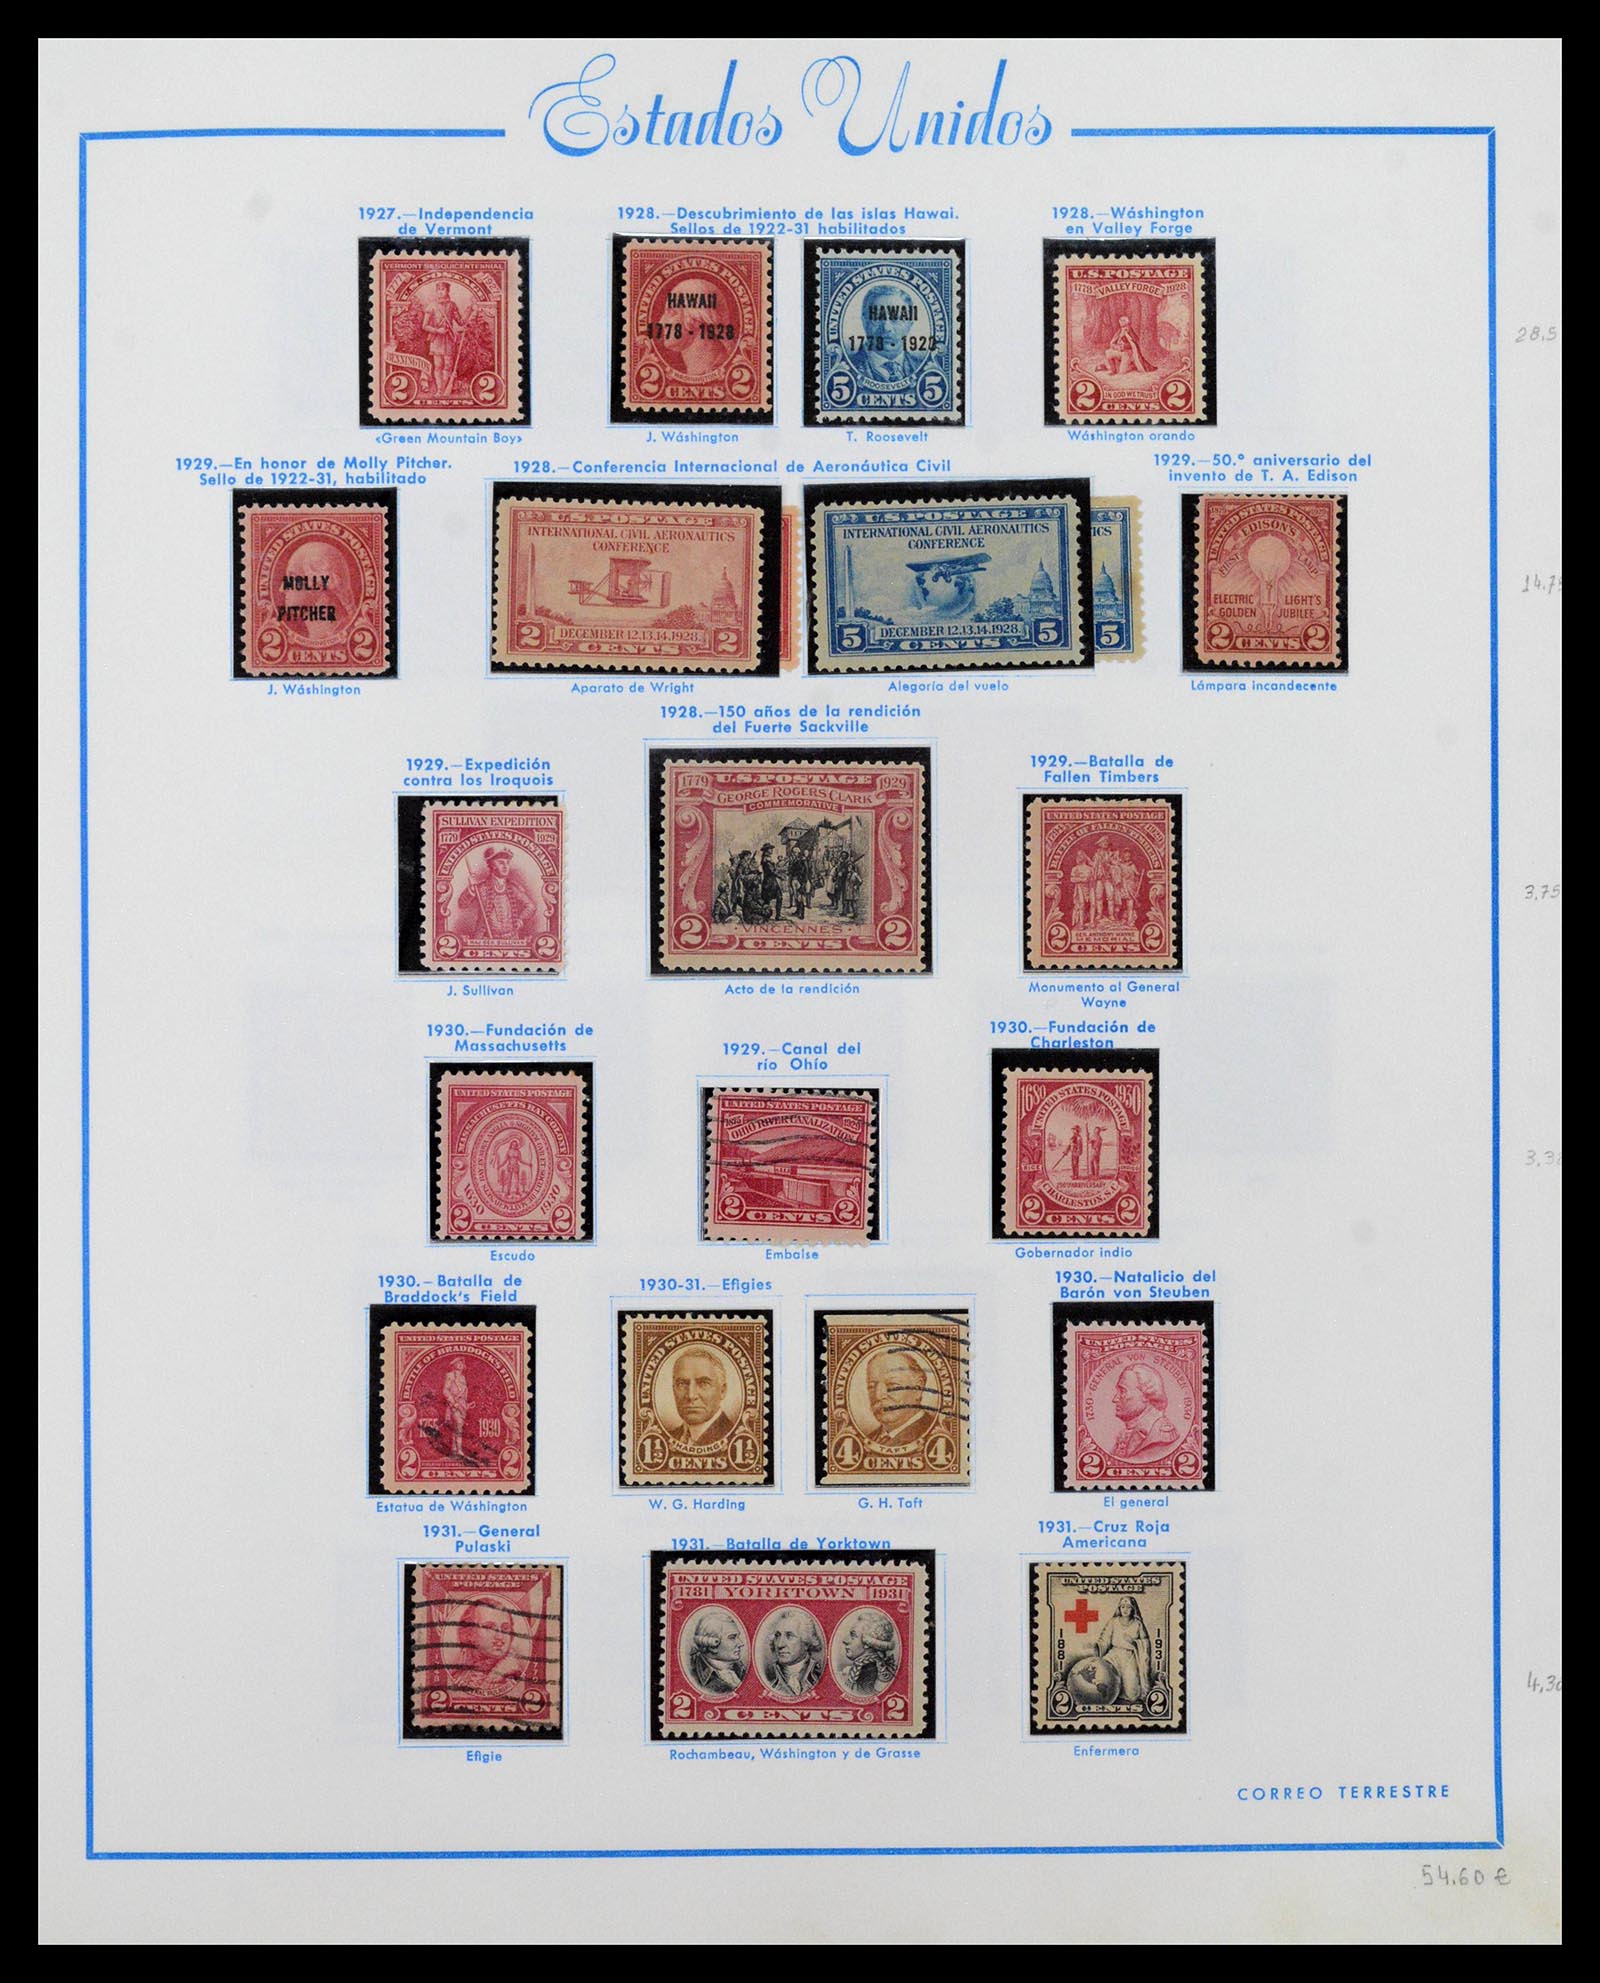 39190 0016 - Stamp collection 39190 USA 1851-1975.